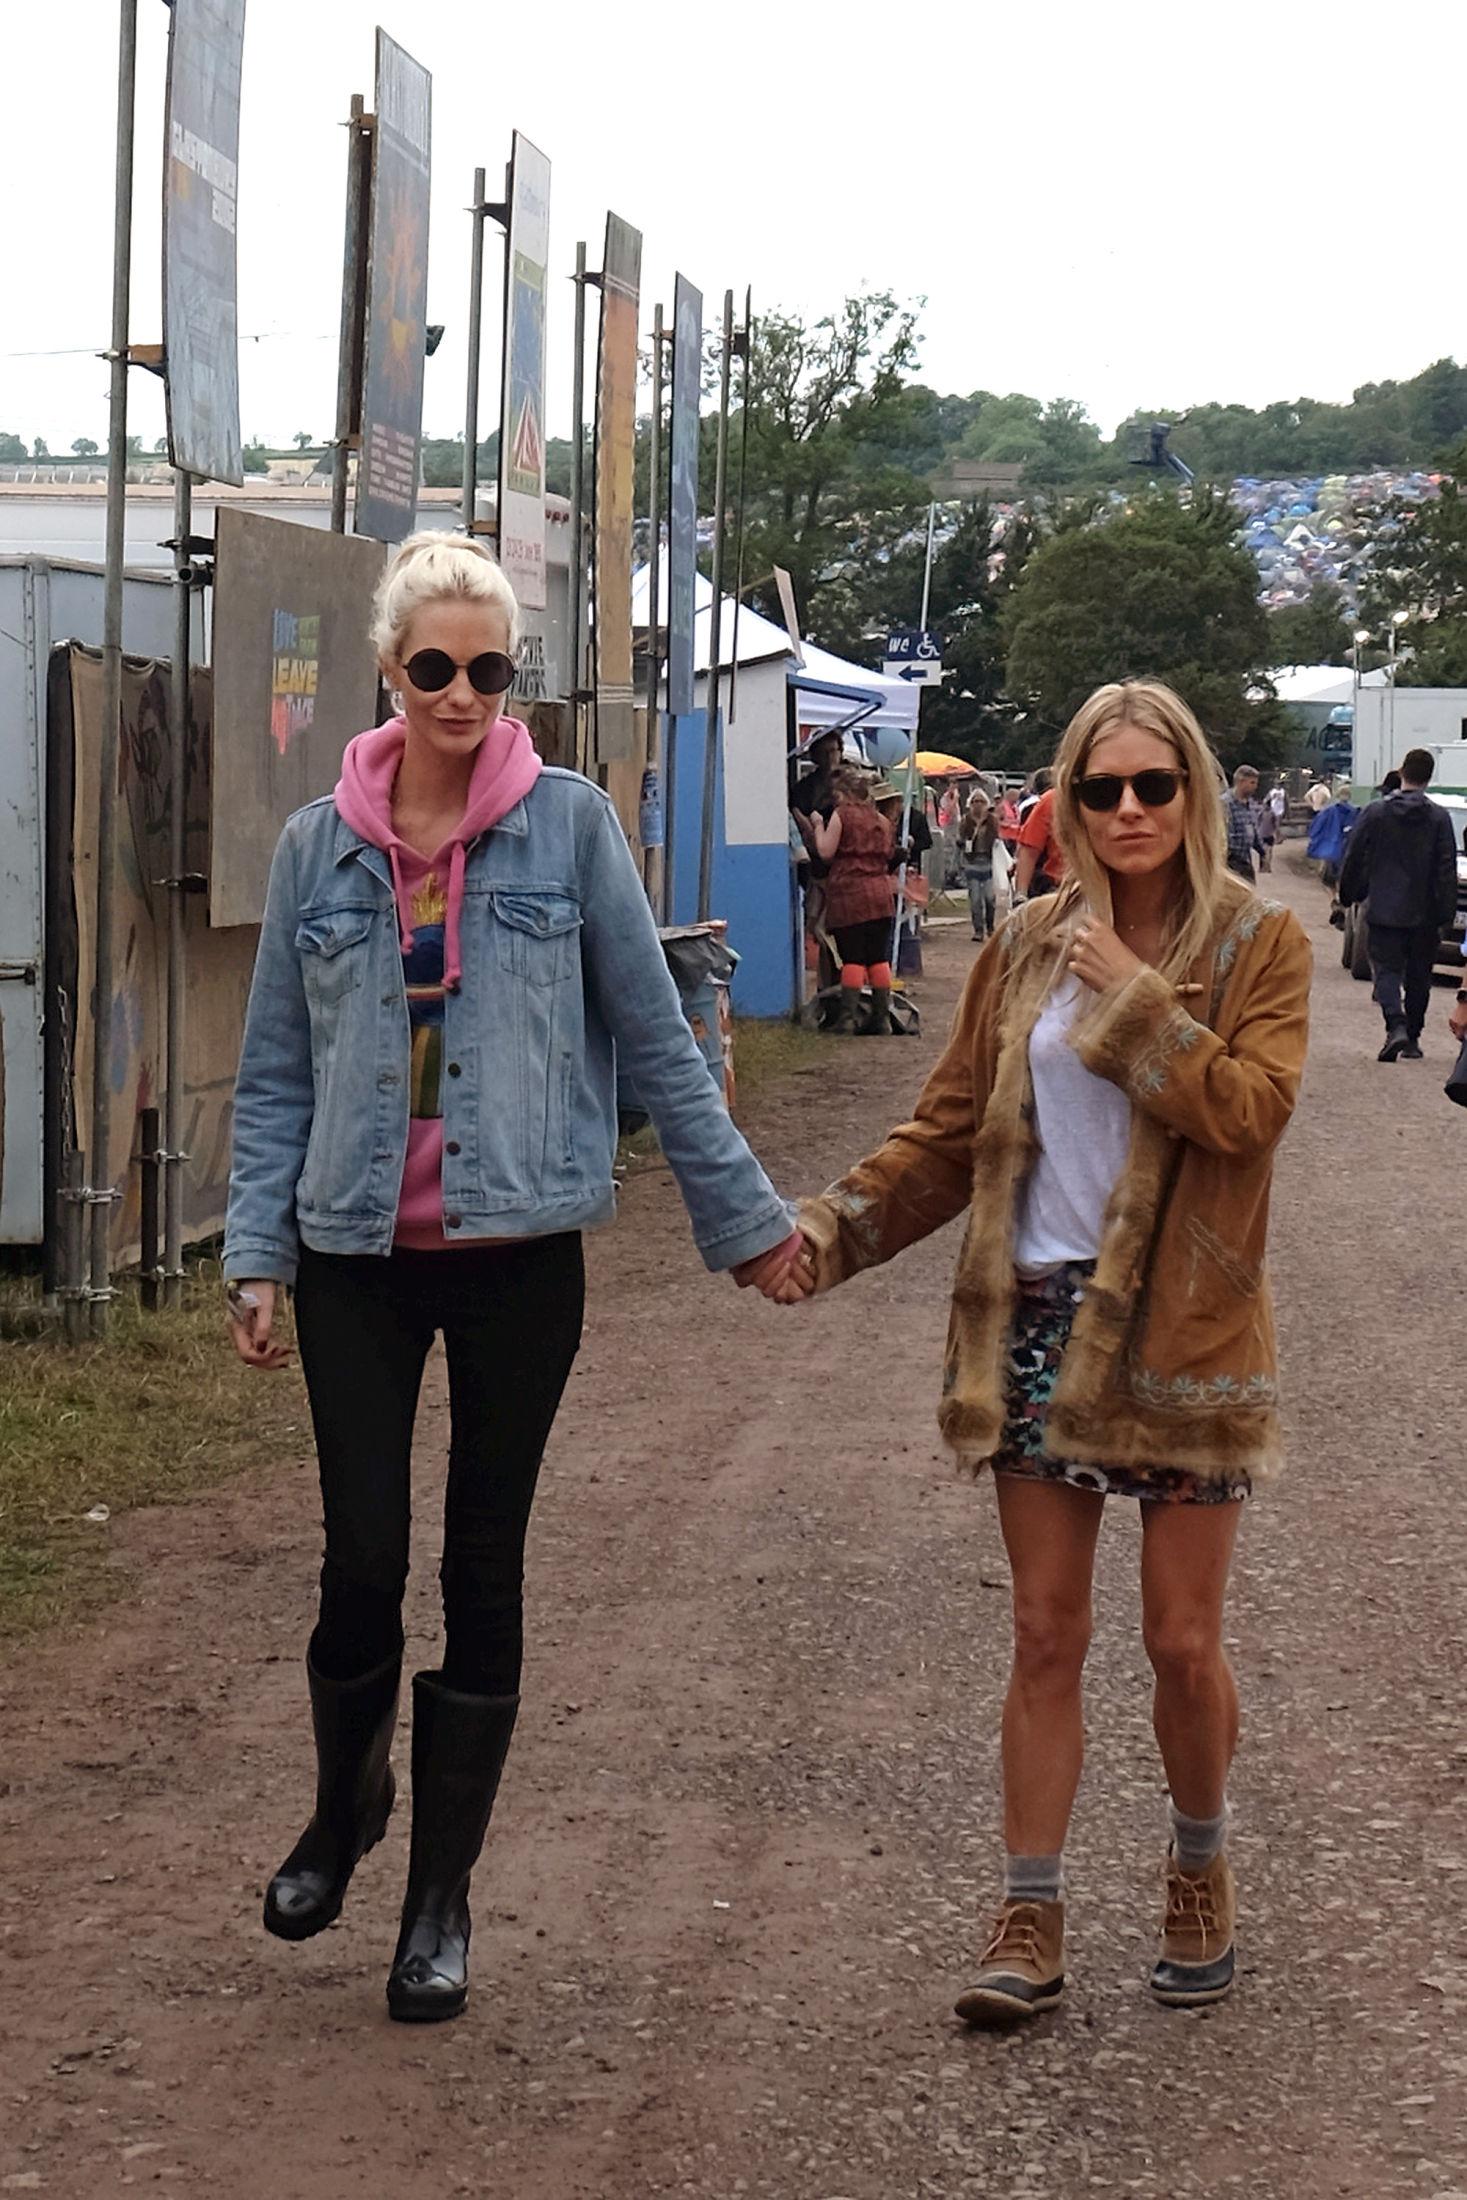 BFFS: Stilikonene Poppy Delevingne og Sienna Miller virker å være faste reisepartnere hvert år på Glastonbury-festivalen. Her er Delevingne er iført rosa hettegenser, tights og jeans, mens Sienna gikk for mønstret skjørt, hvit topp og skinnjakke. Foto: Getty Images